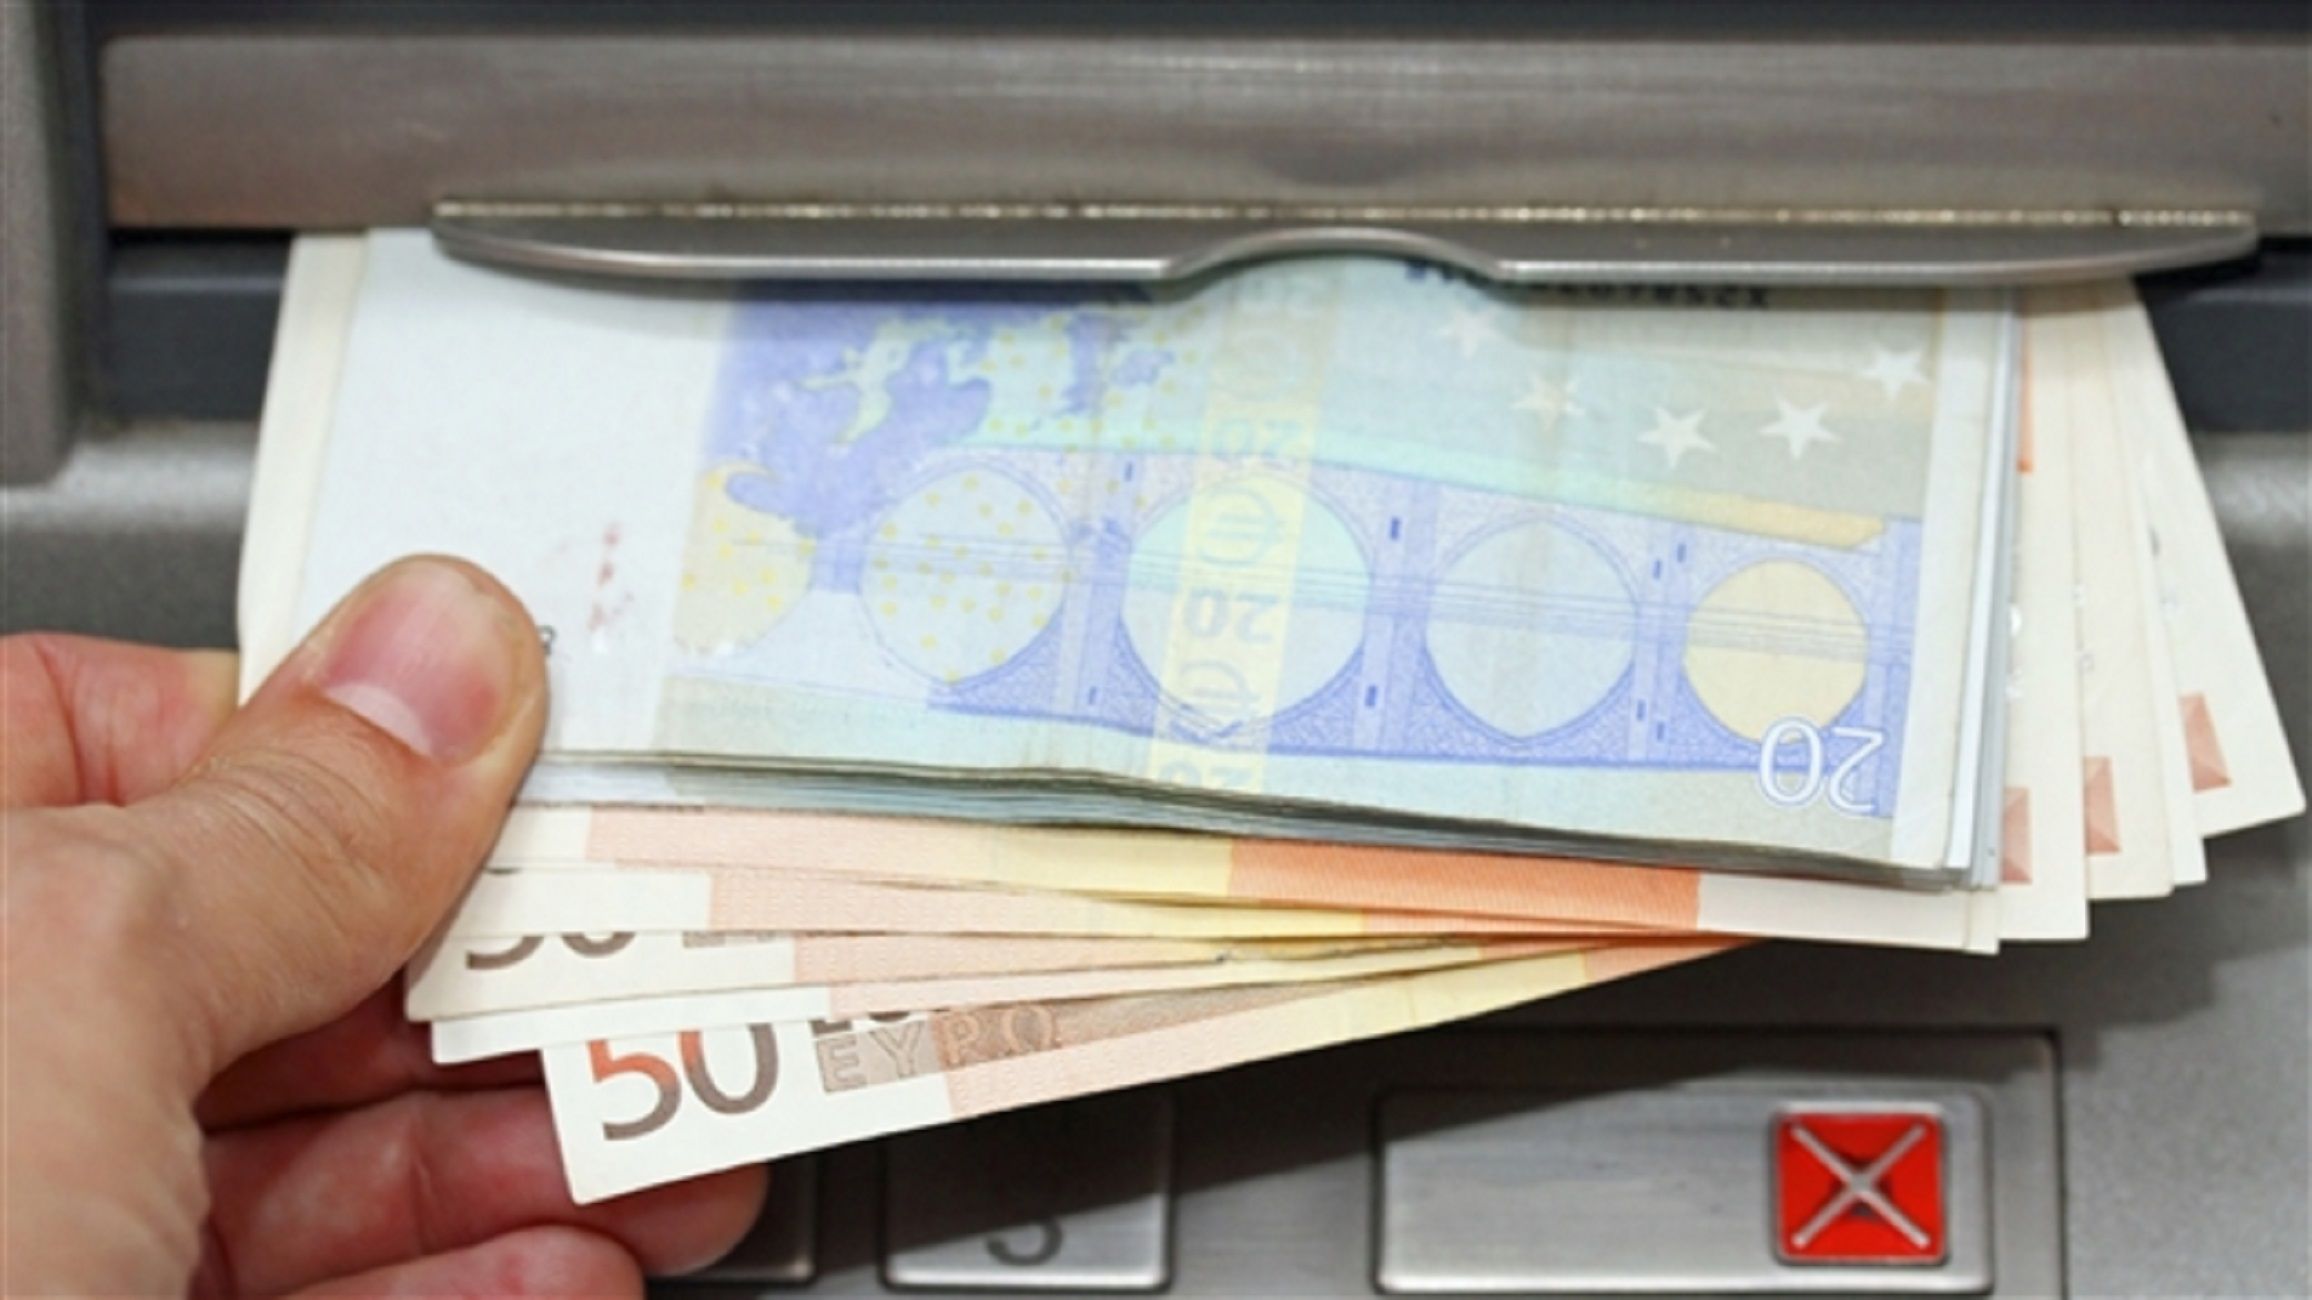 Caixer automàtic diners euros